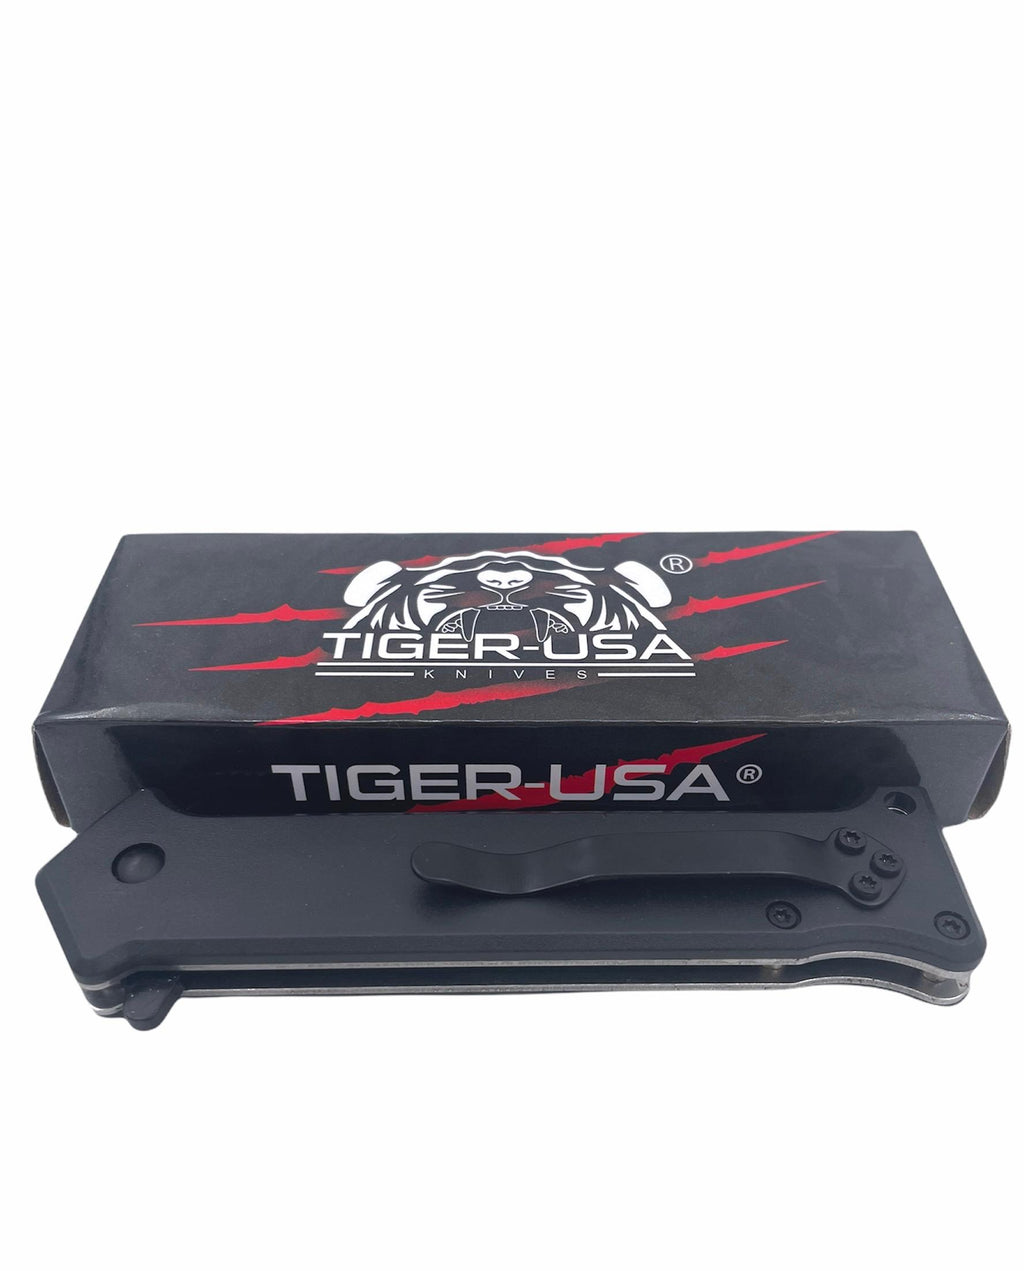 Tiger-USA Spring Assisted Knife - DEER SKULL